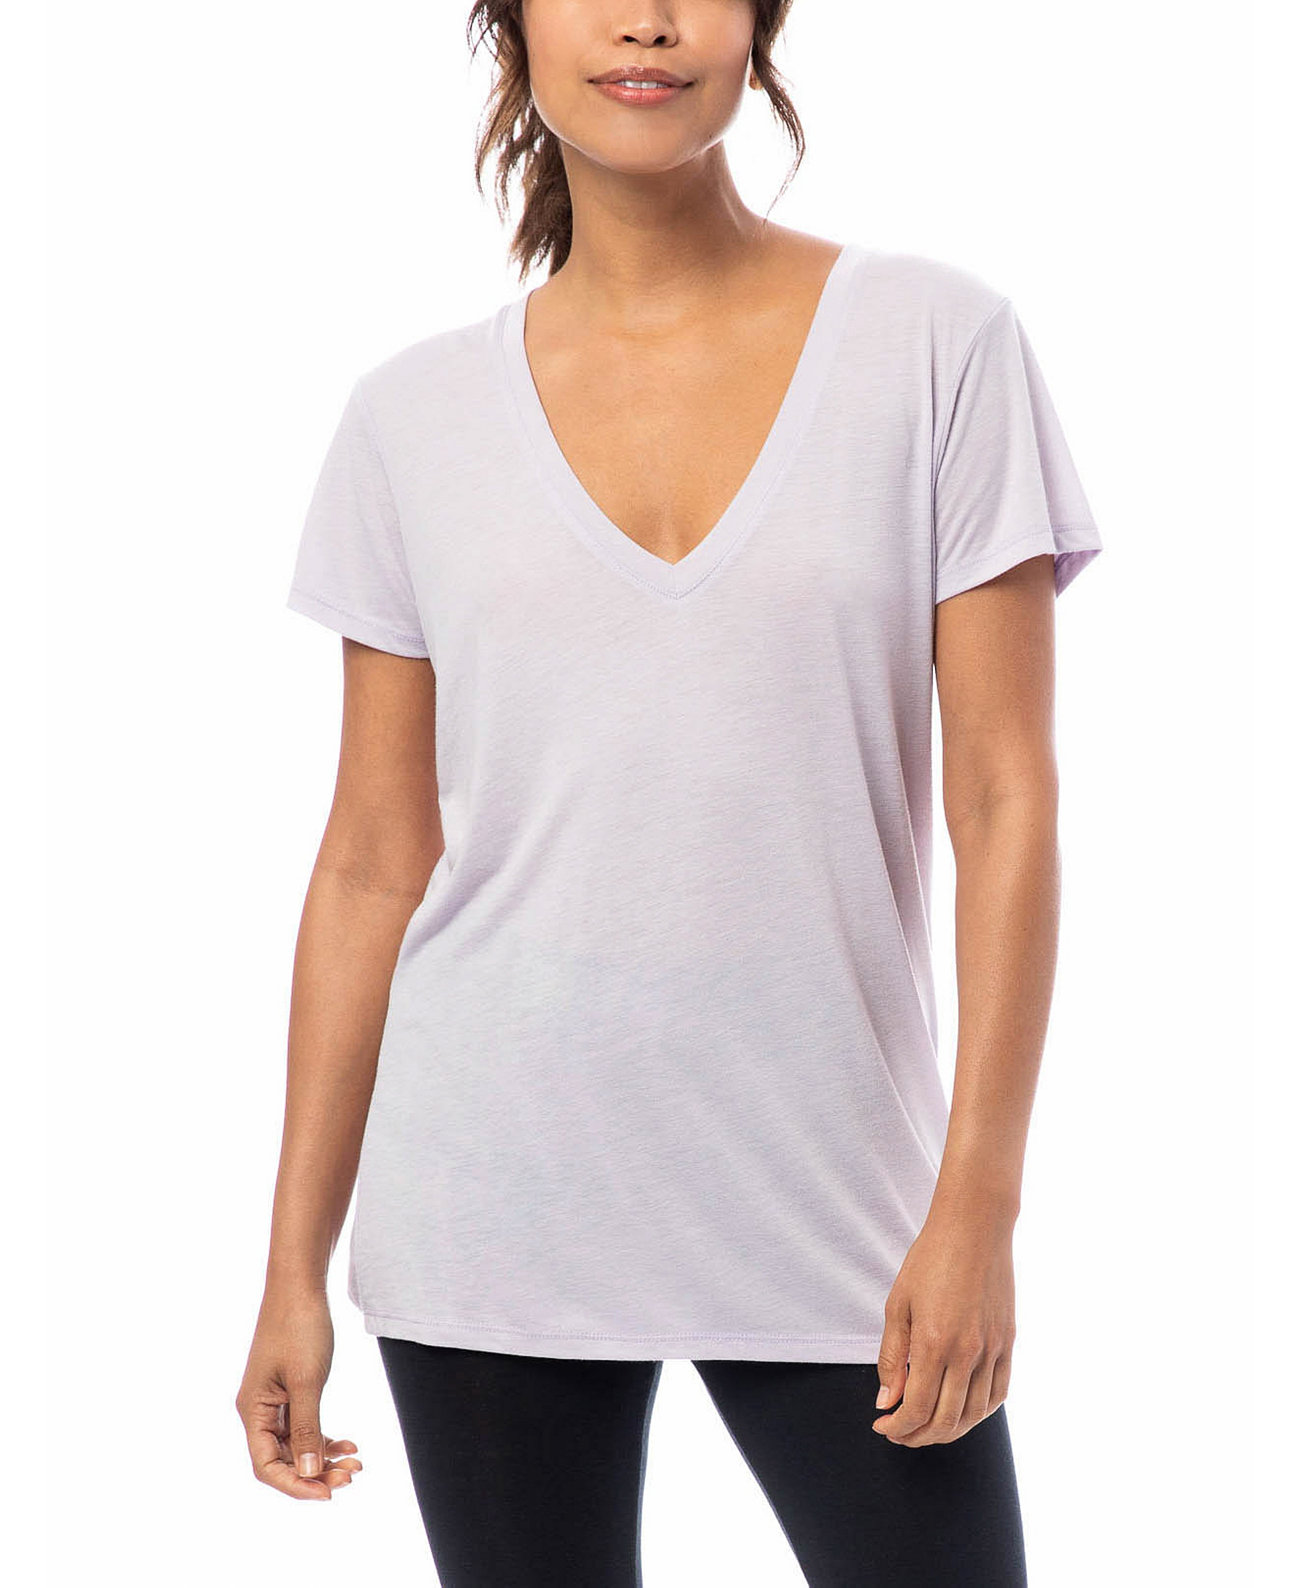 Женская футболка с V-образным вырезом из обтягивающего трикотажа Macy's